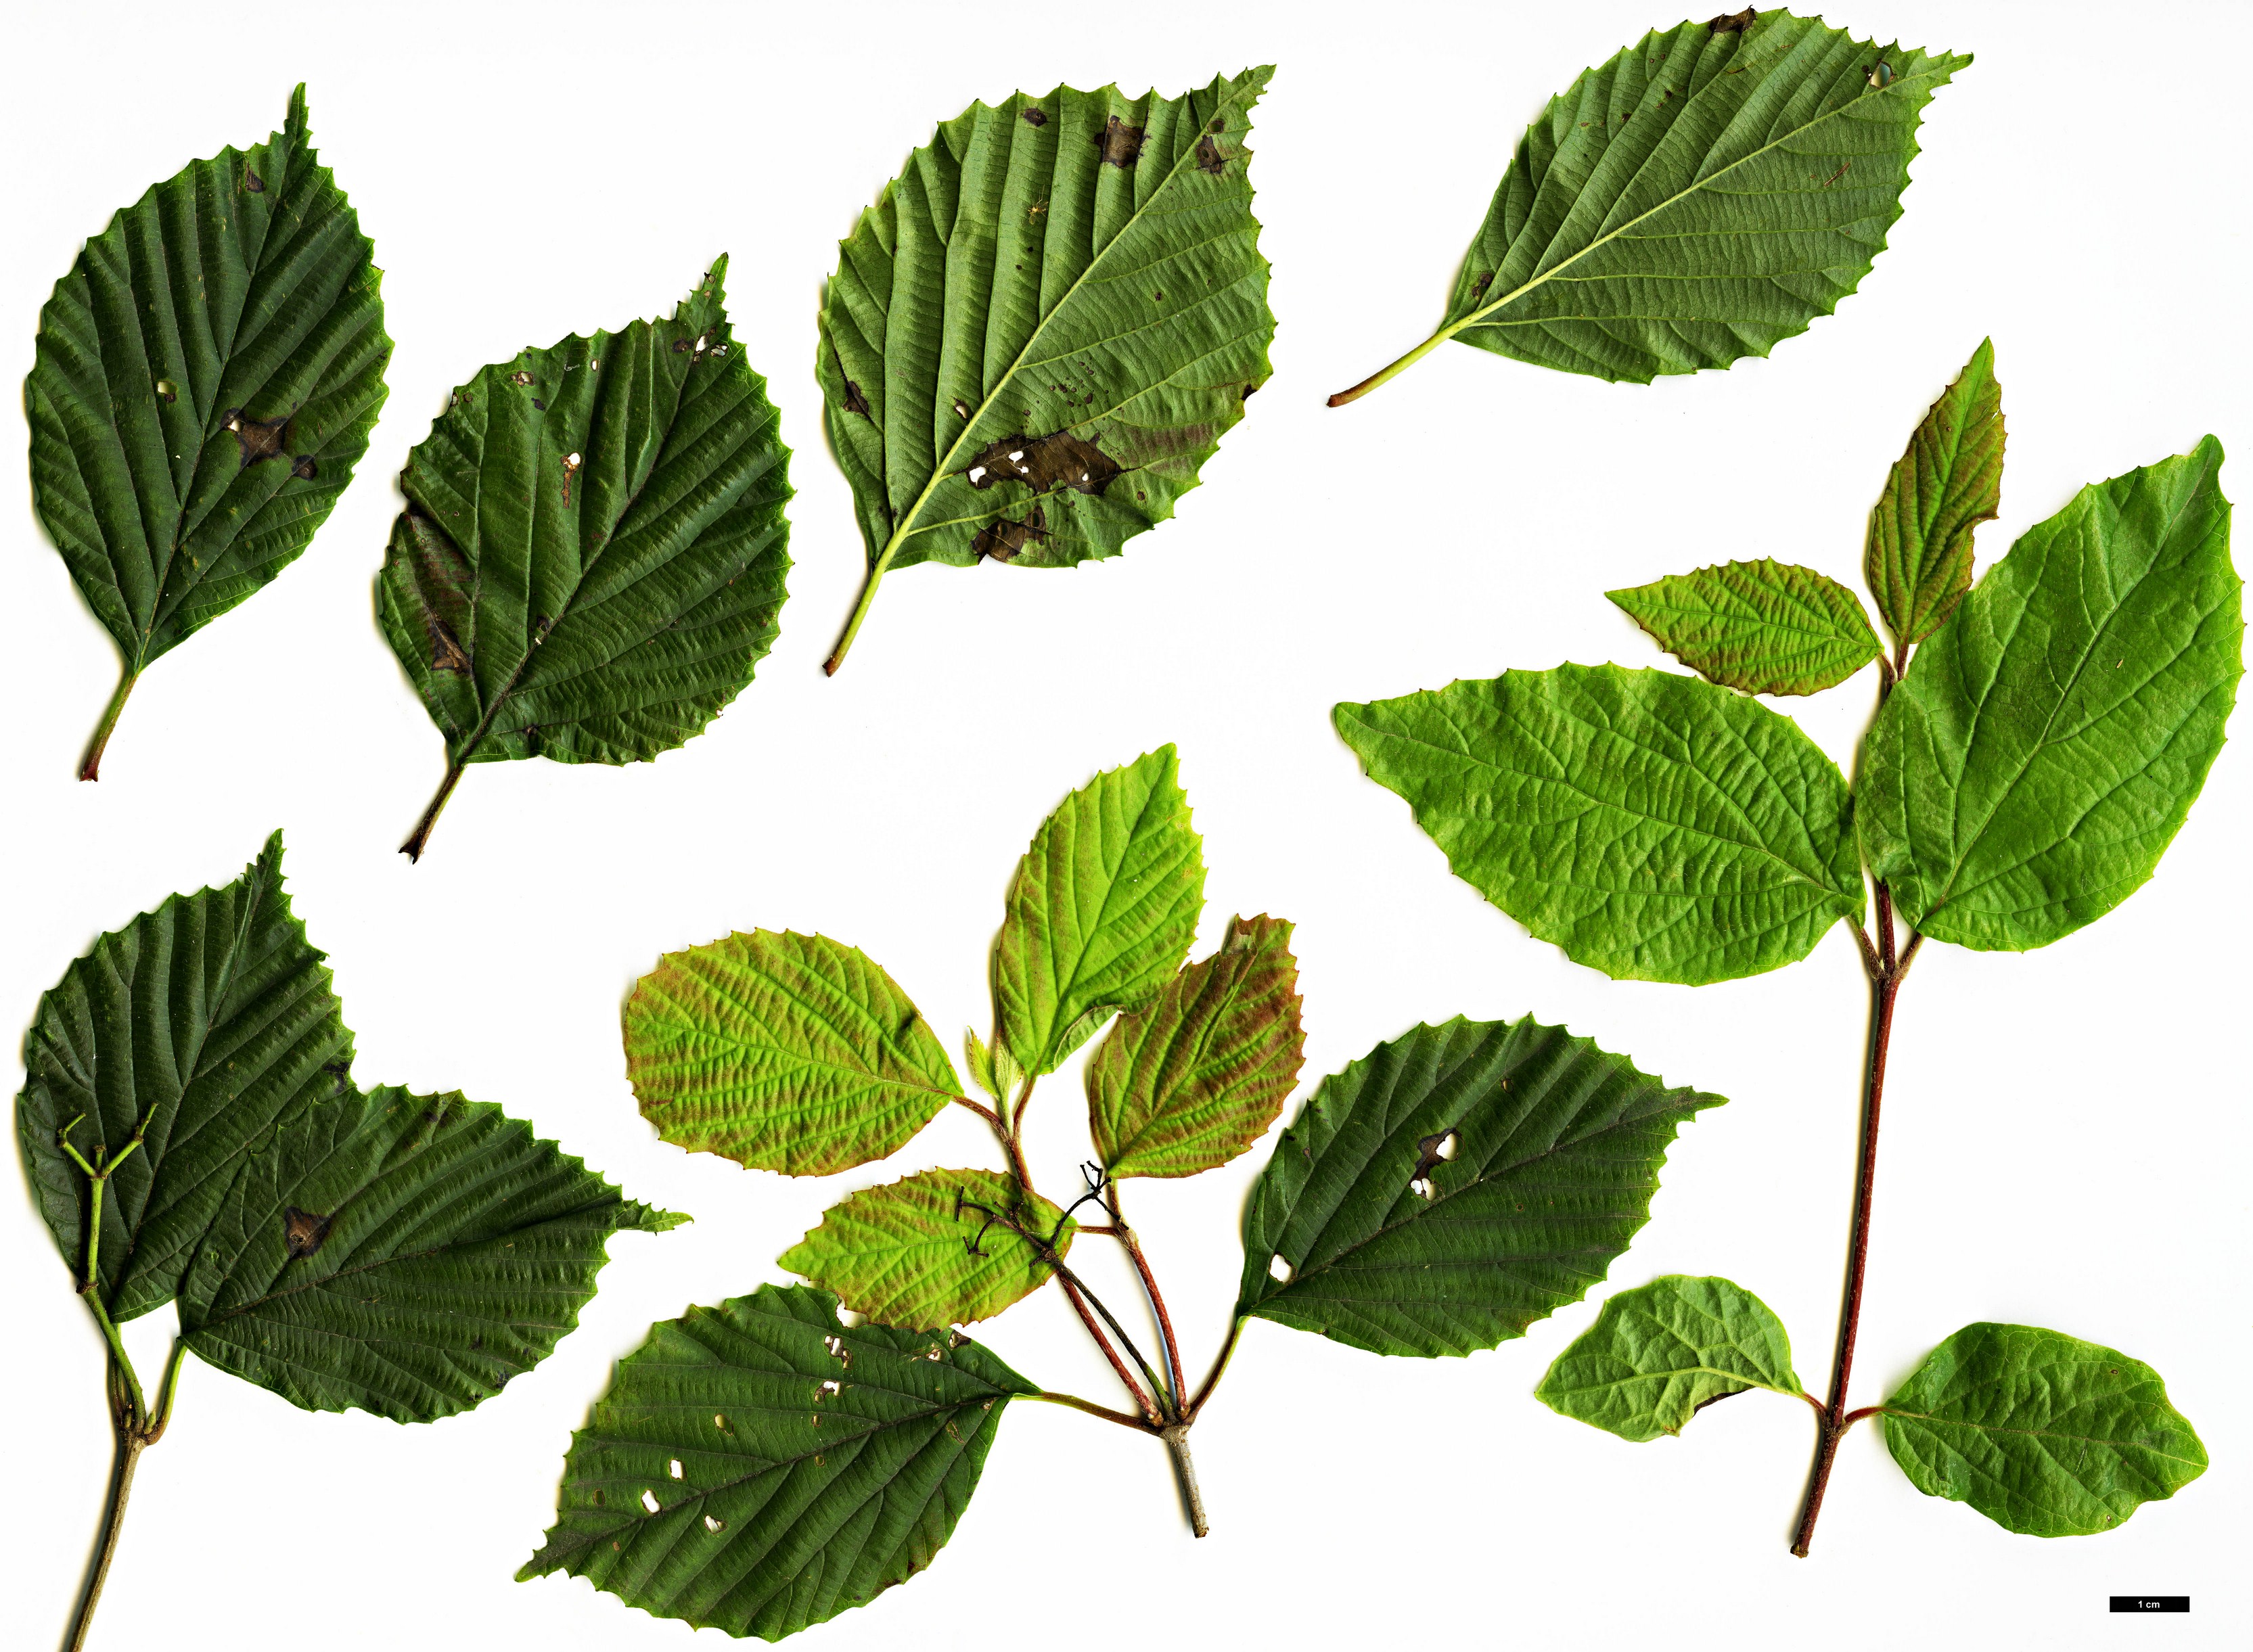 High resolution image: Family: Adoxaceae - Genus: Viburnum - Taxon: melanocarpum